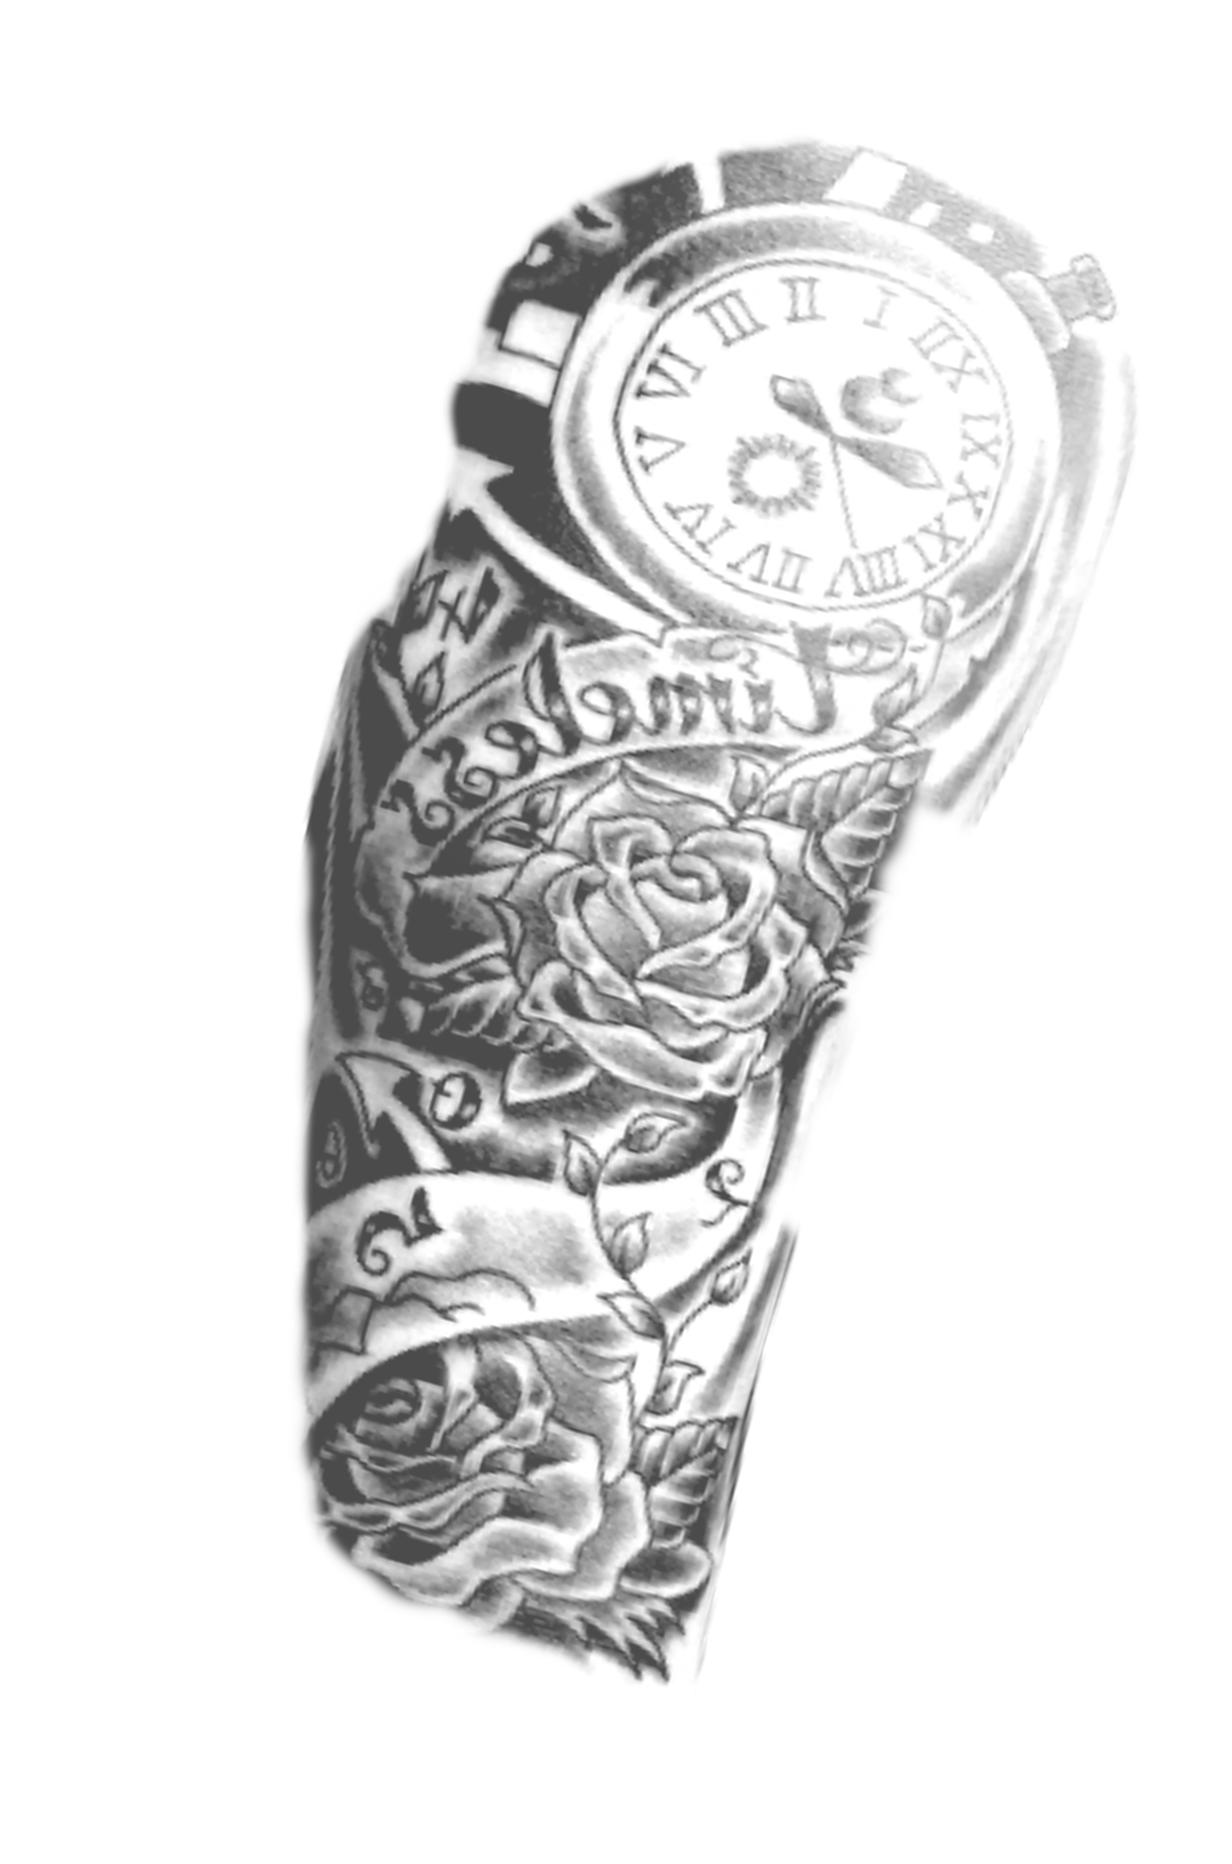 Share 133 about picsart arm tattoo png super hot  indaotaonec